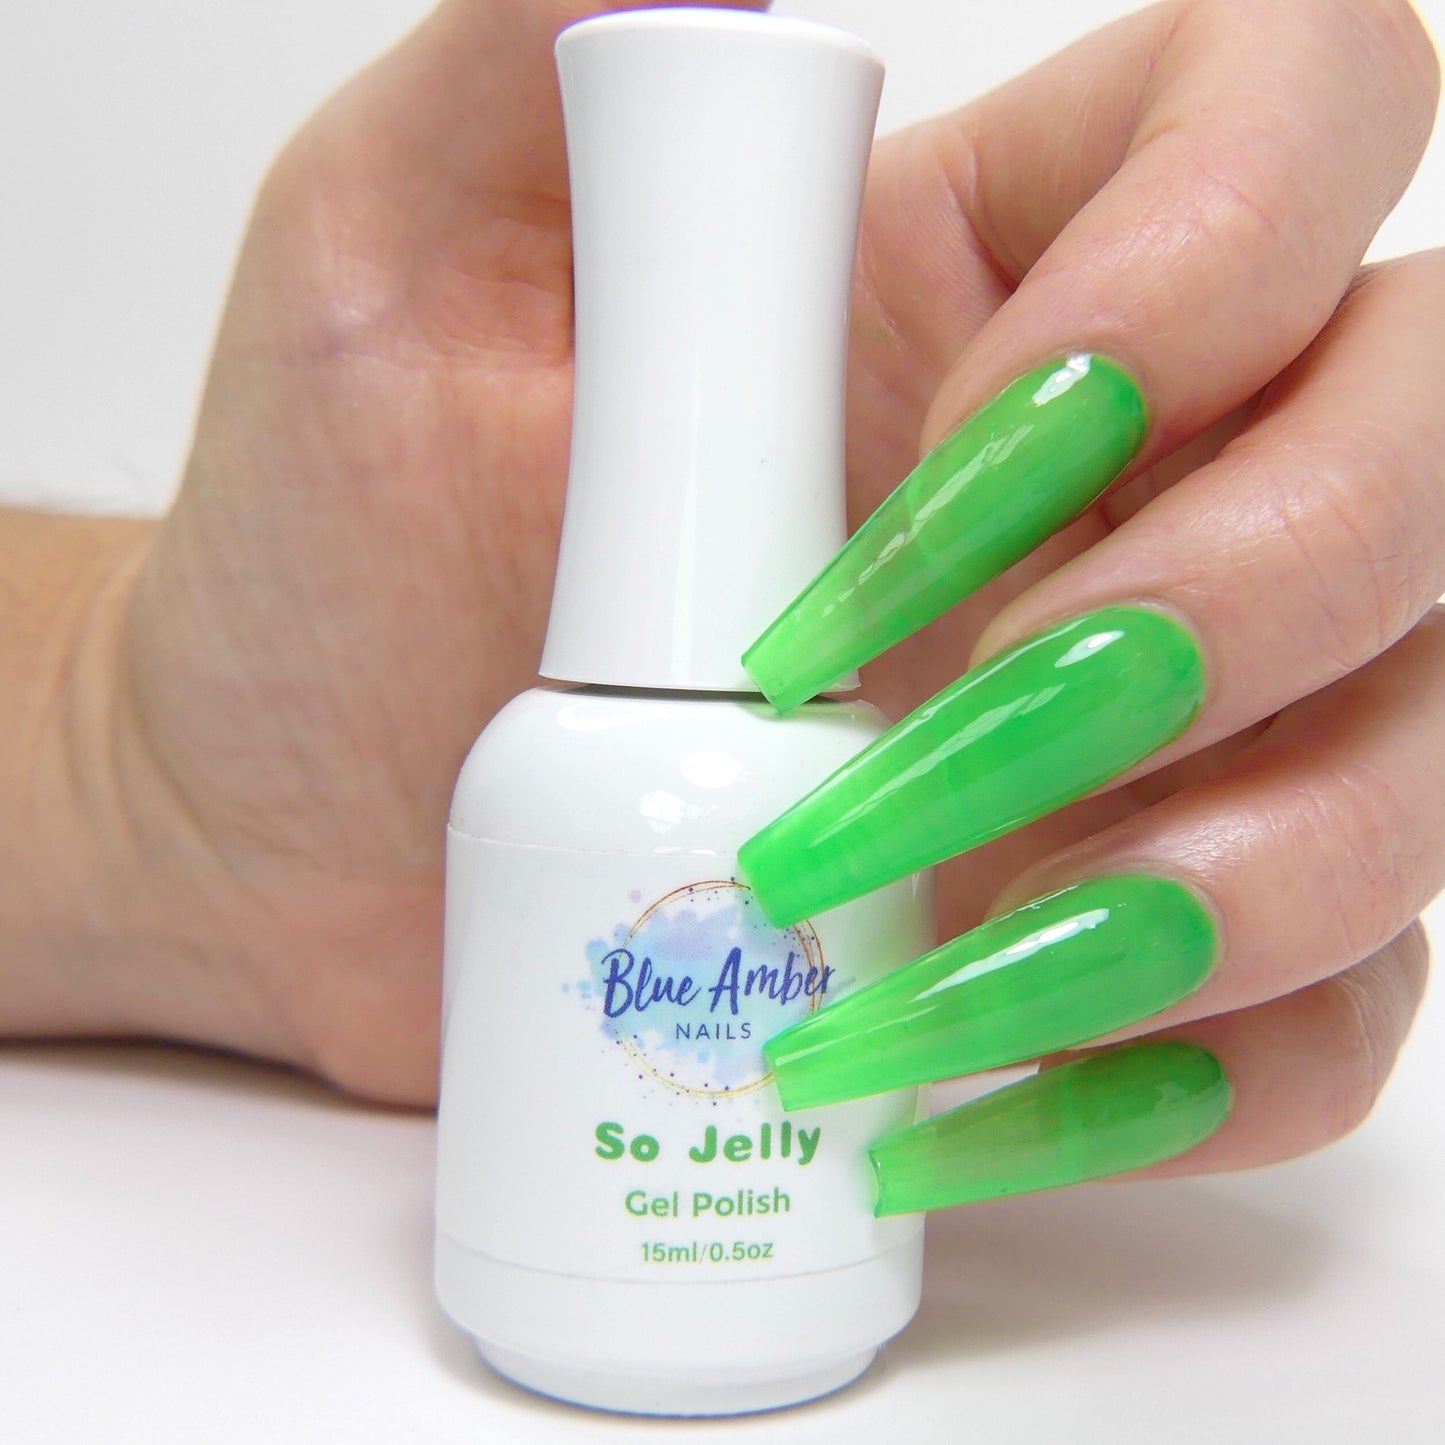 So Jelly Gel Polish - Green